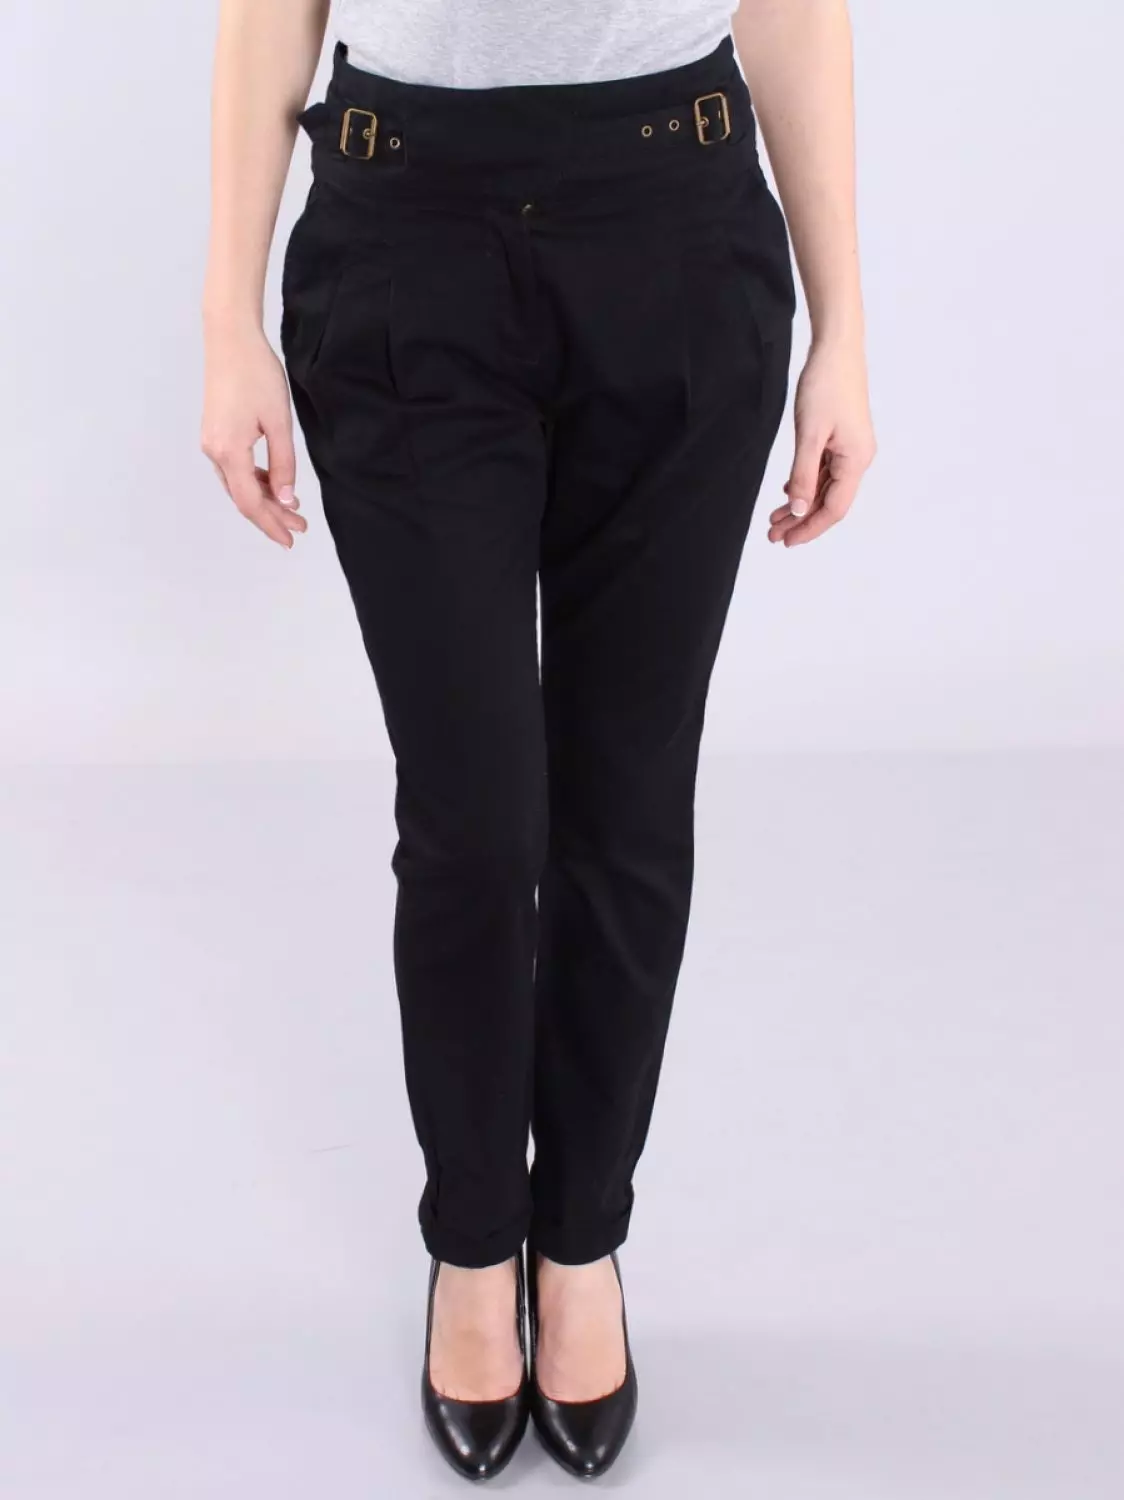 Modne hlače 2021: Ženski elegantni modeli, modni trendovi 917_44